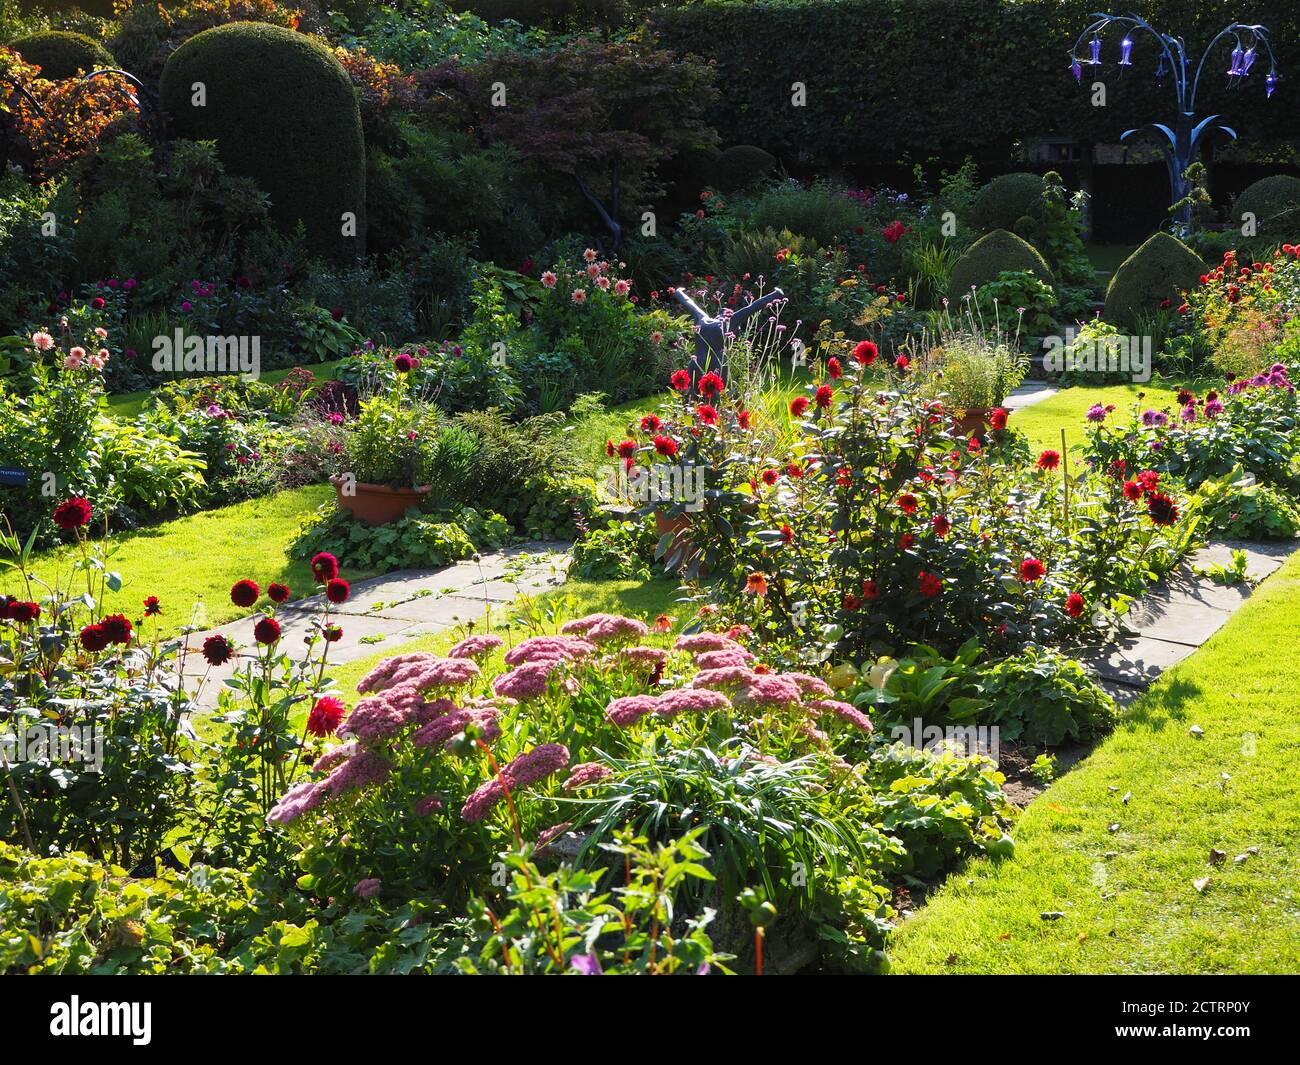 Chenies Manor Sunken Garden in mid September 2020. Jenny Pickford's Bluebell sculpture Stock Photo